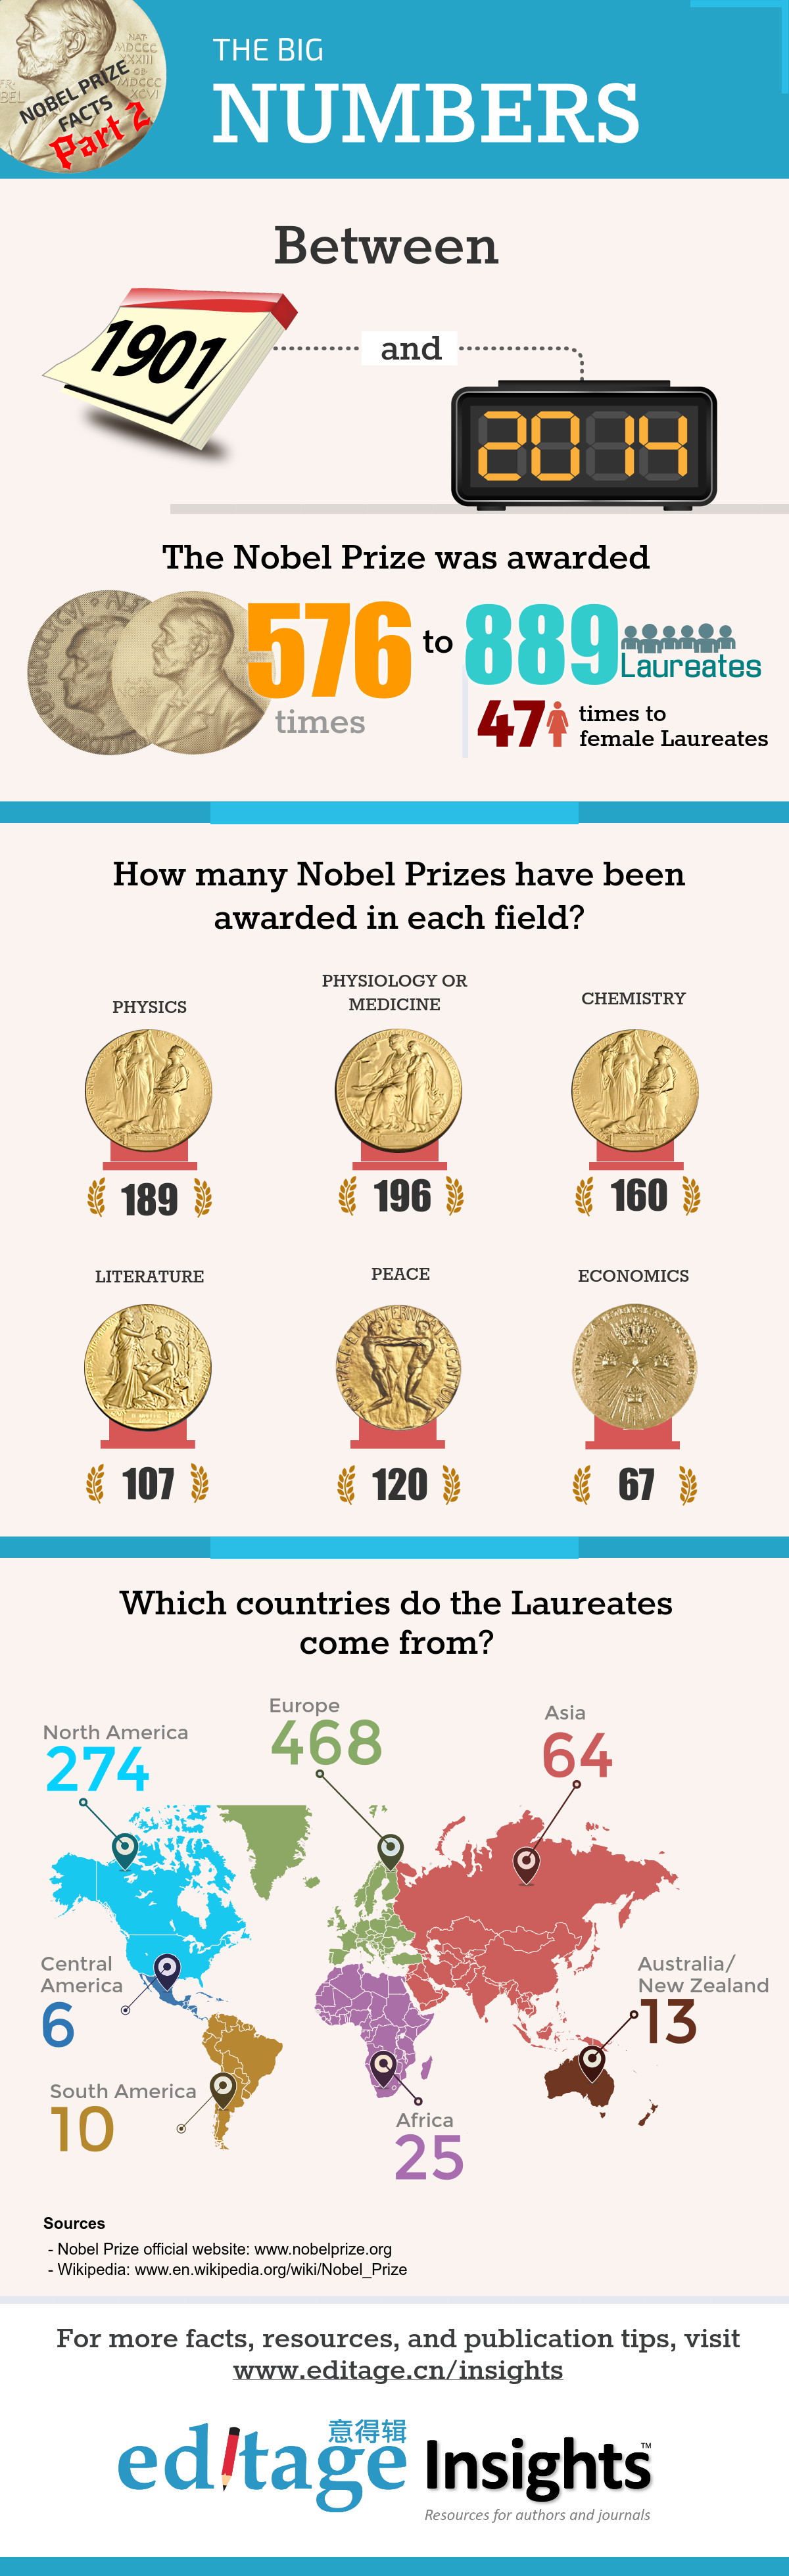 诺贝尔奖得奖者领域与国家分布回顾